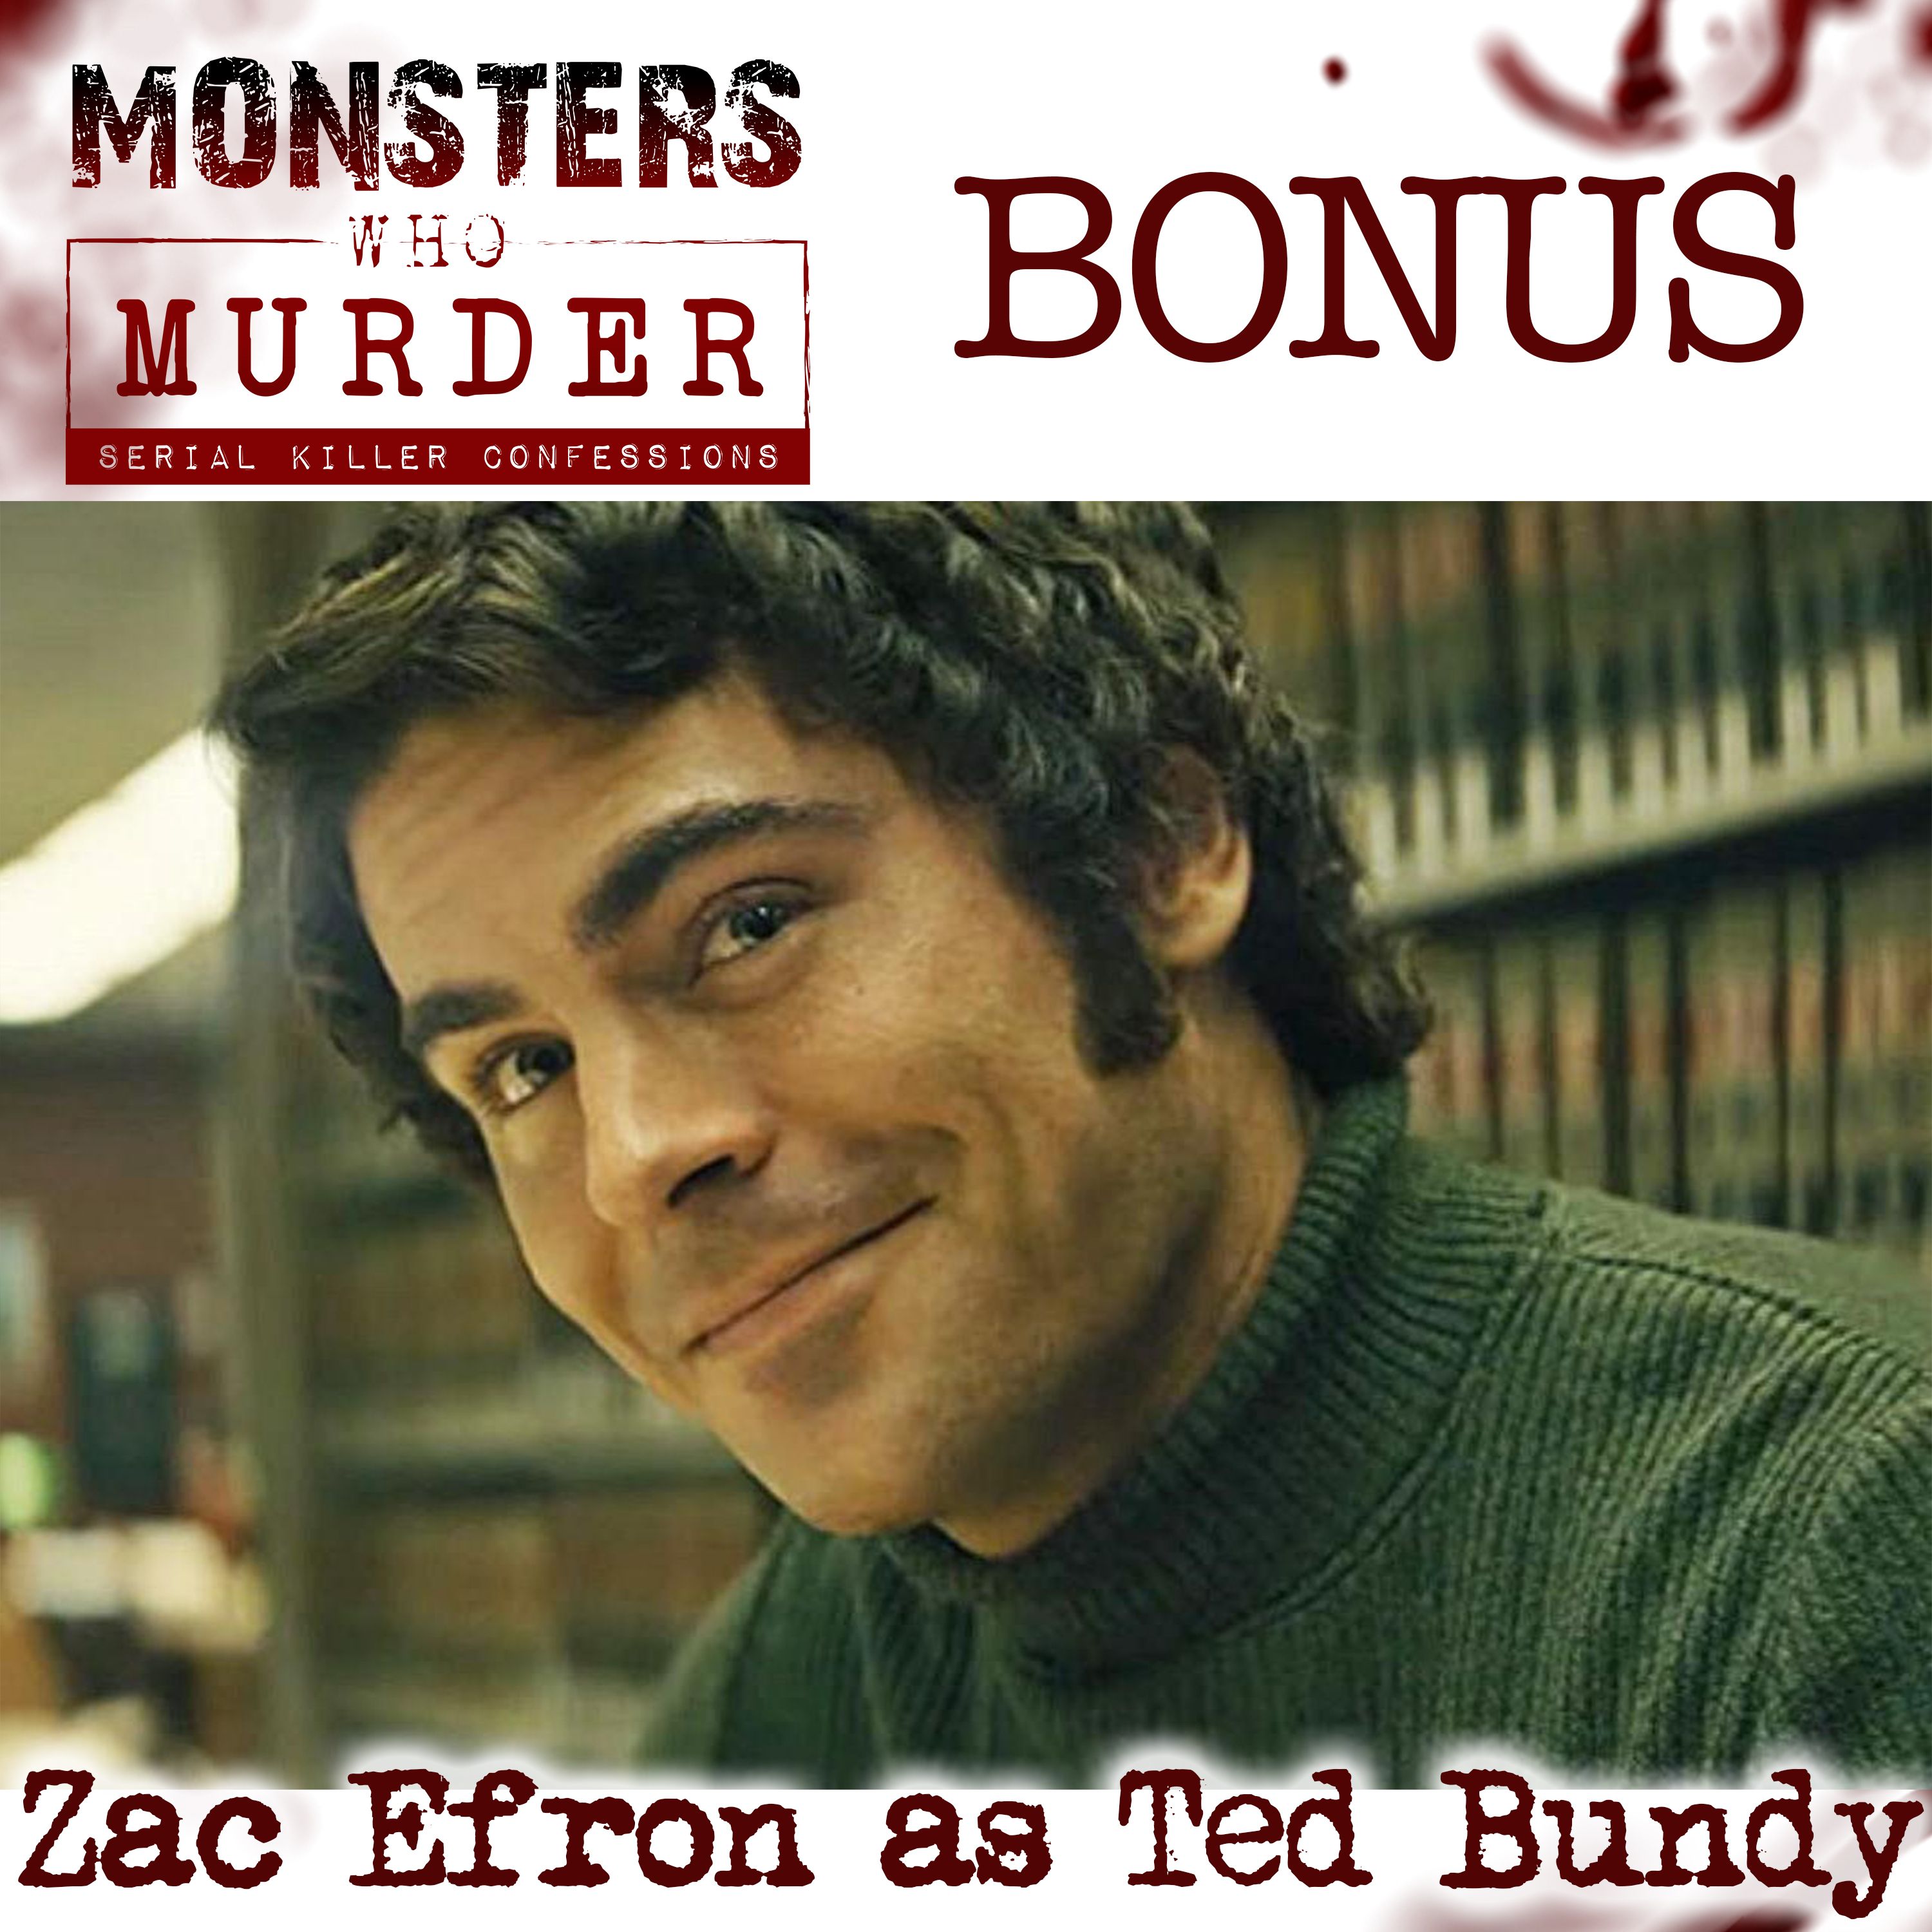 BONUS- Zac Efron as Ted Bundy PLUS Katheleen Folbigg, Michael Gargiulo & Ashton Kutcher